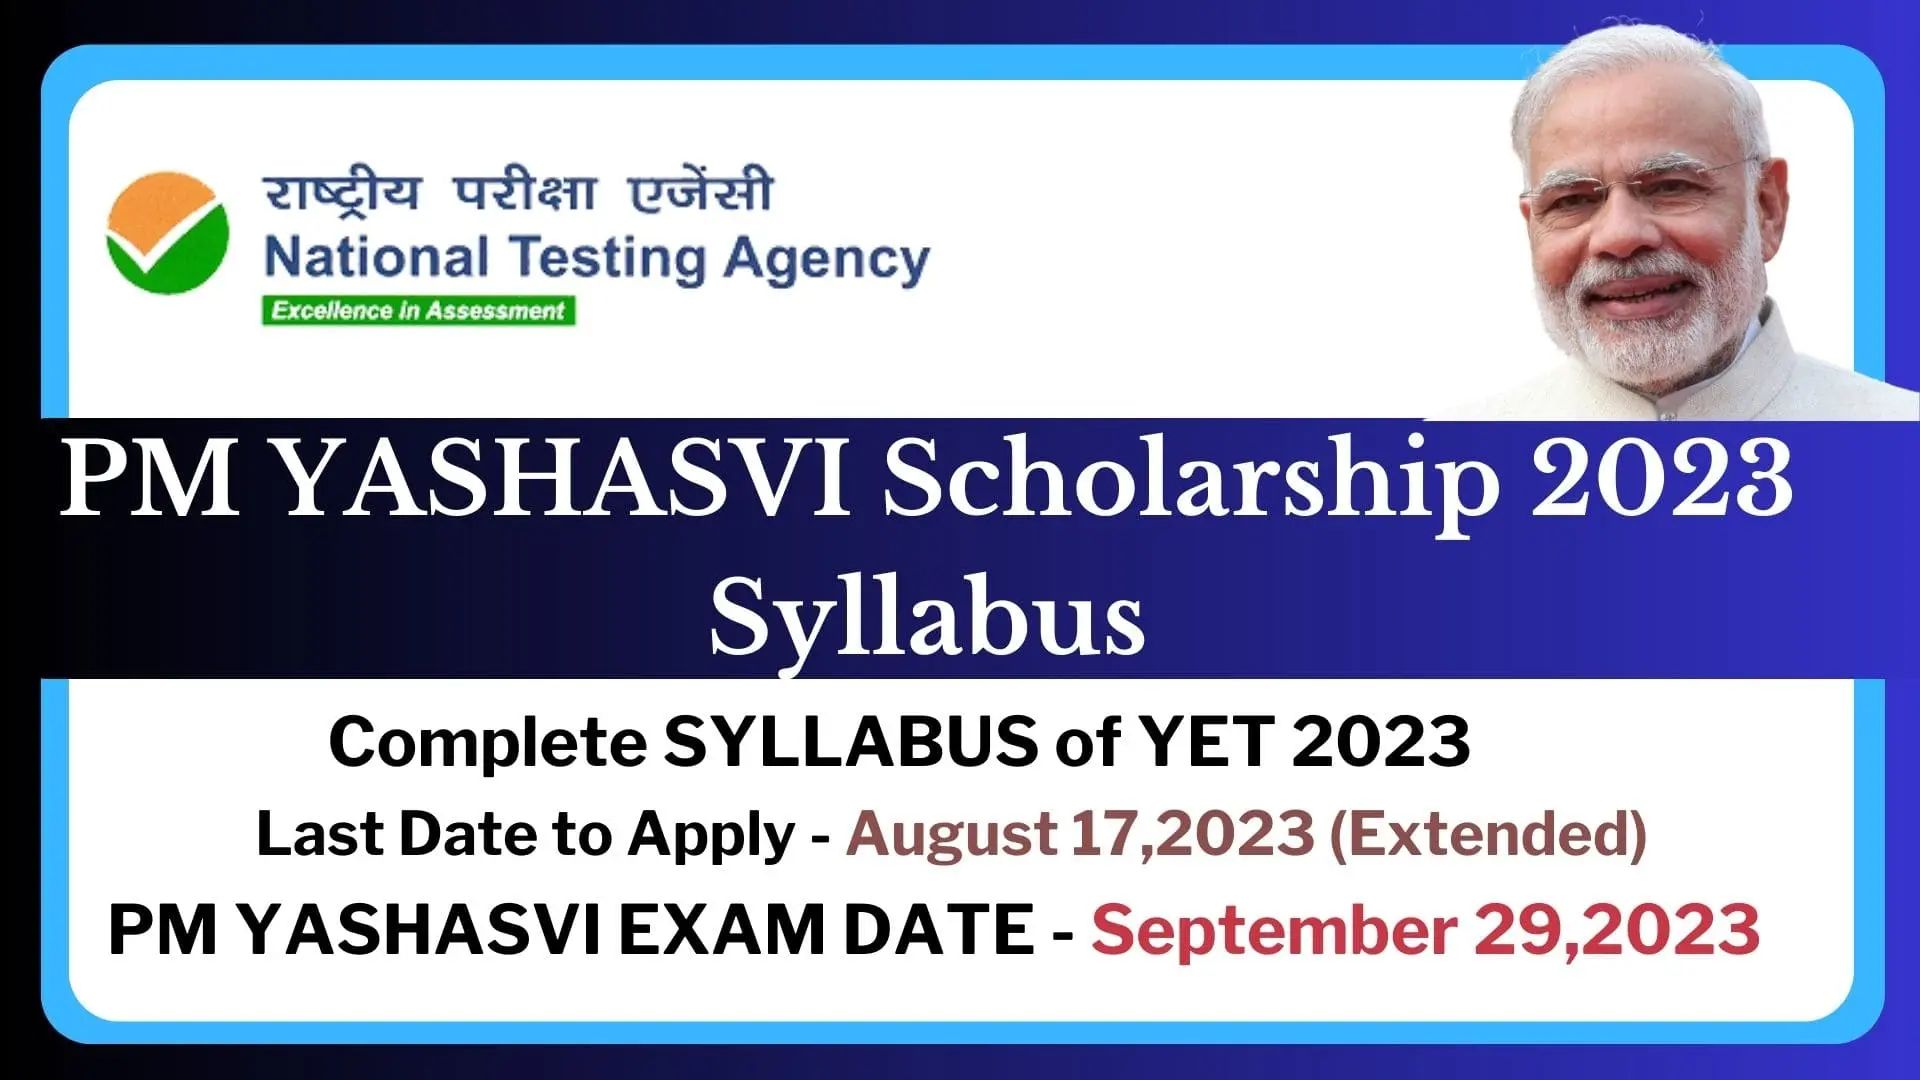 PM Yashasvi Scholarship 2023 Syllabus